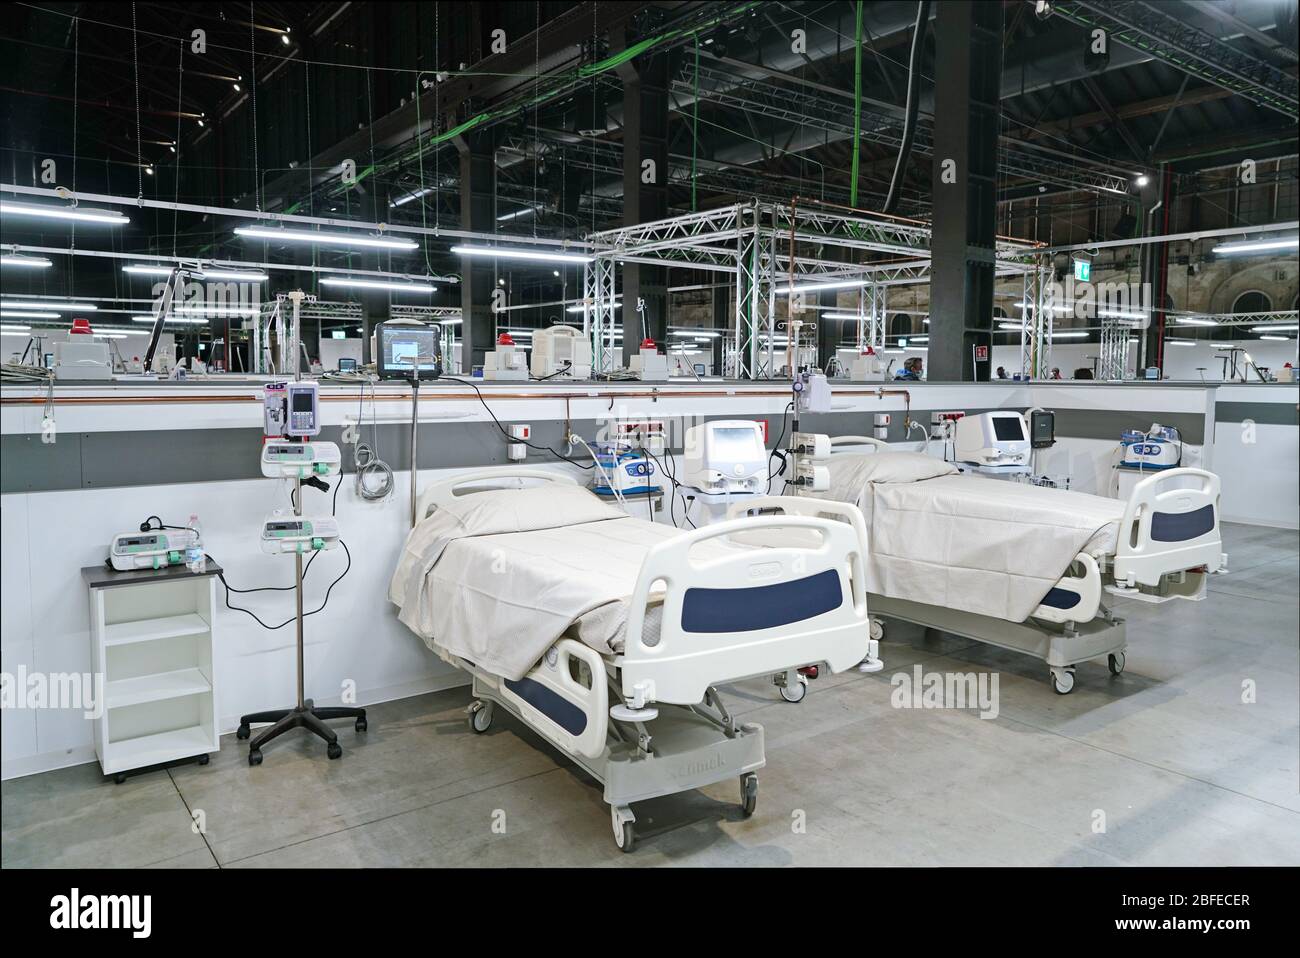 Hôpital de campagne de Covid, installé dans une ancienne usine industrielle, avec 90 lits équipés pour la thérapie intensive du coronavirus. Turin, Italie - avril 2020 Banque D'Images